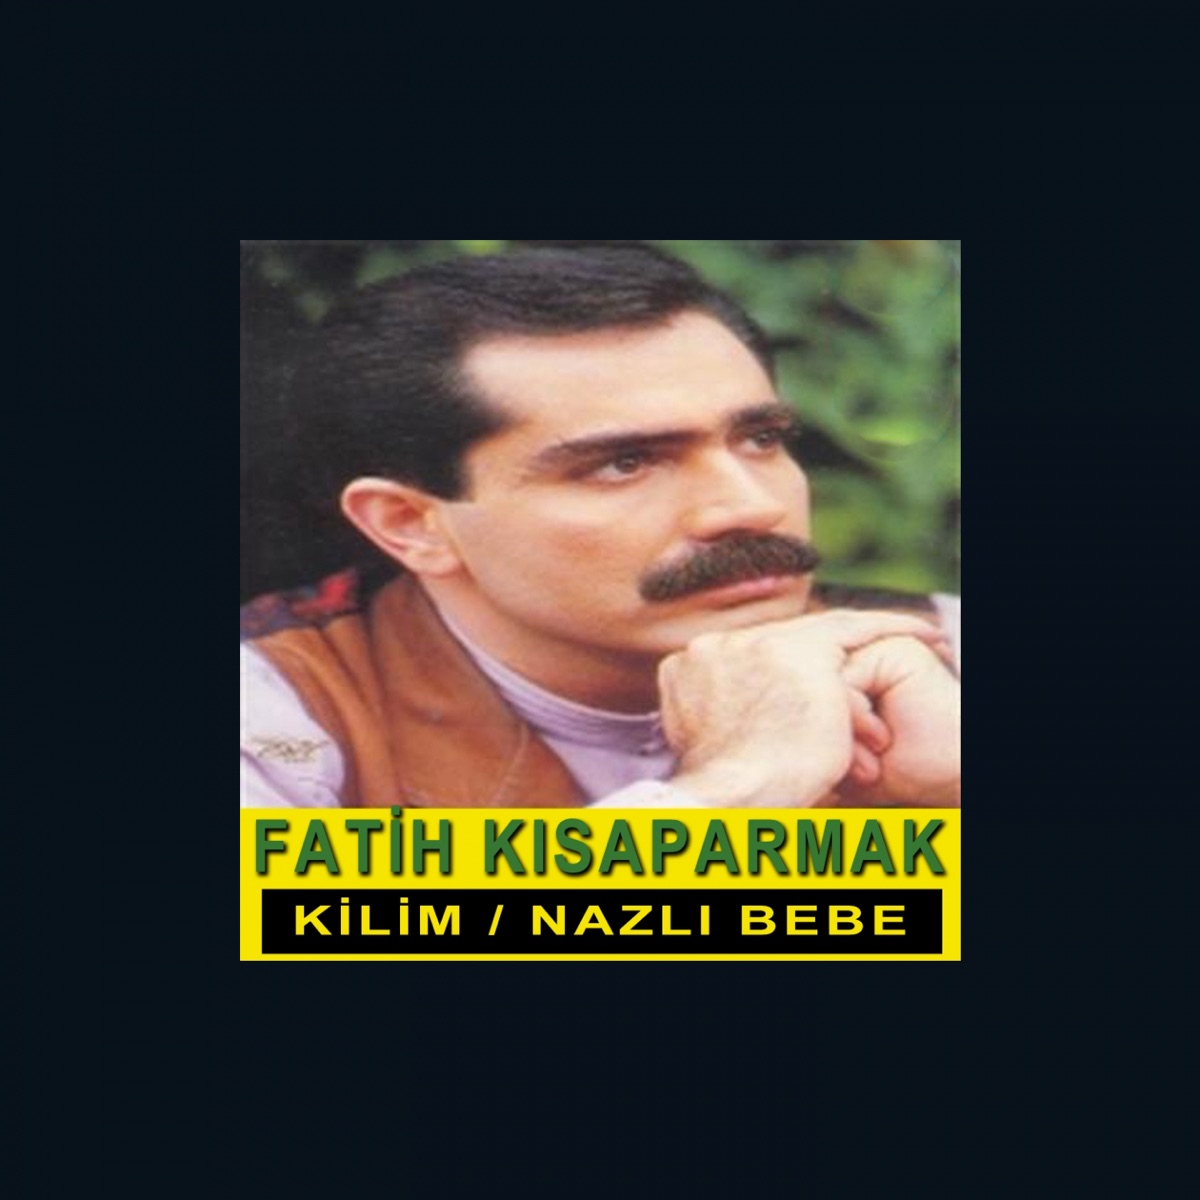 Kilim / Nazlı Bebe - Album by Fatih Kısaparmak - Apple Music